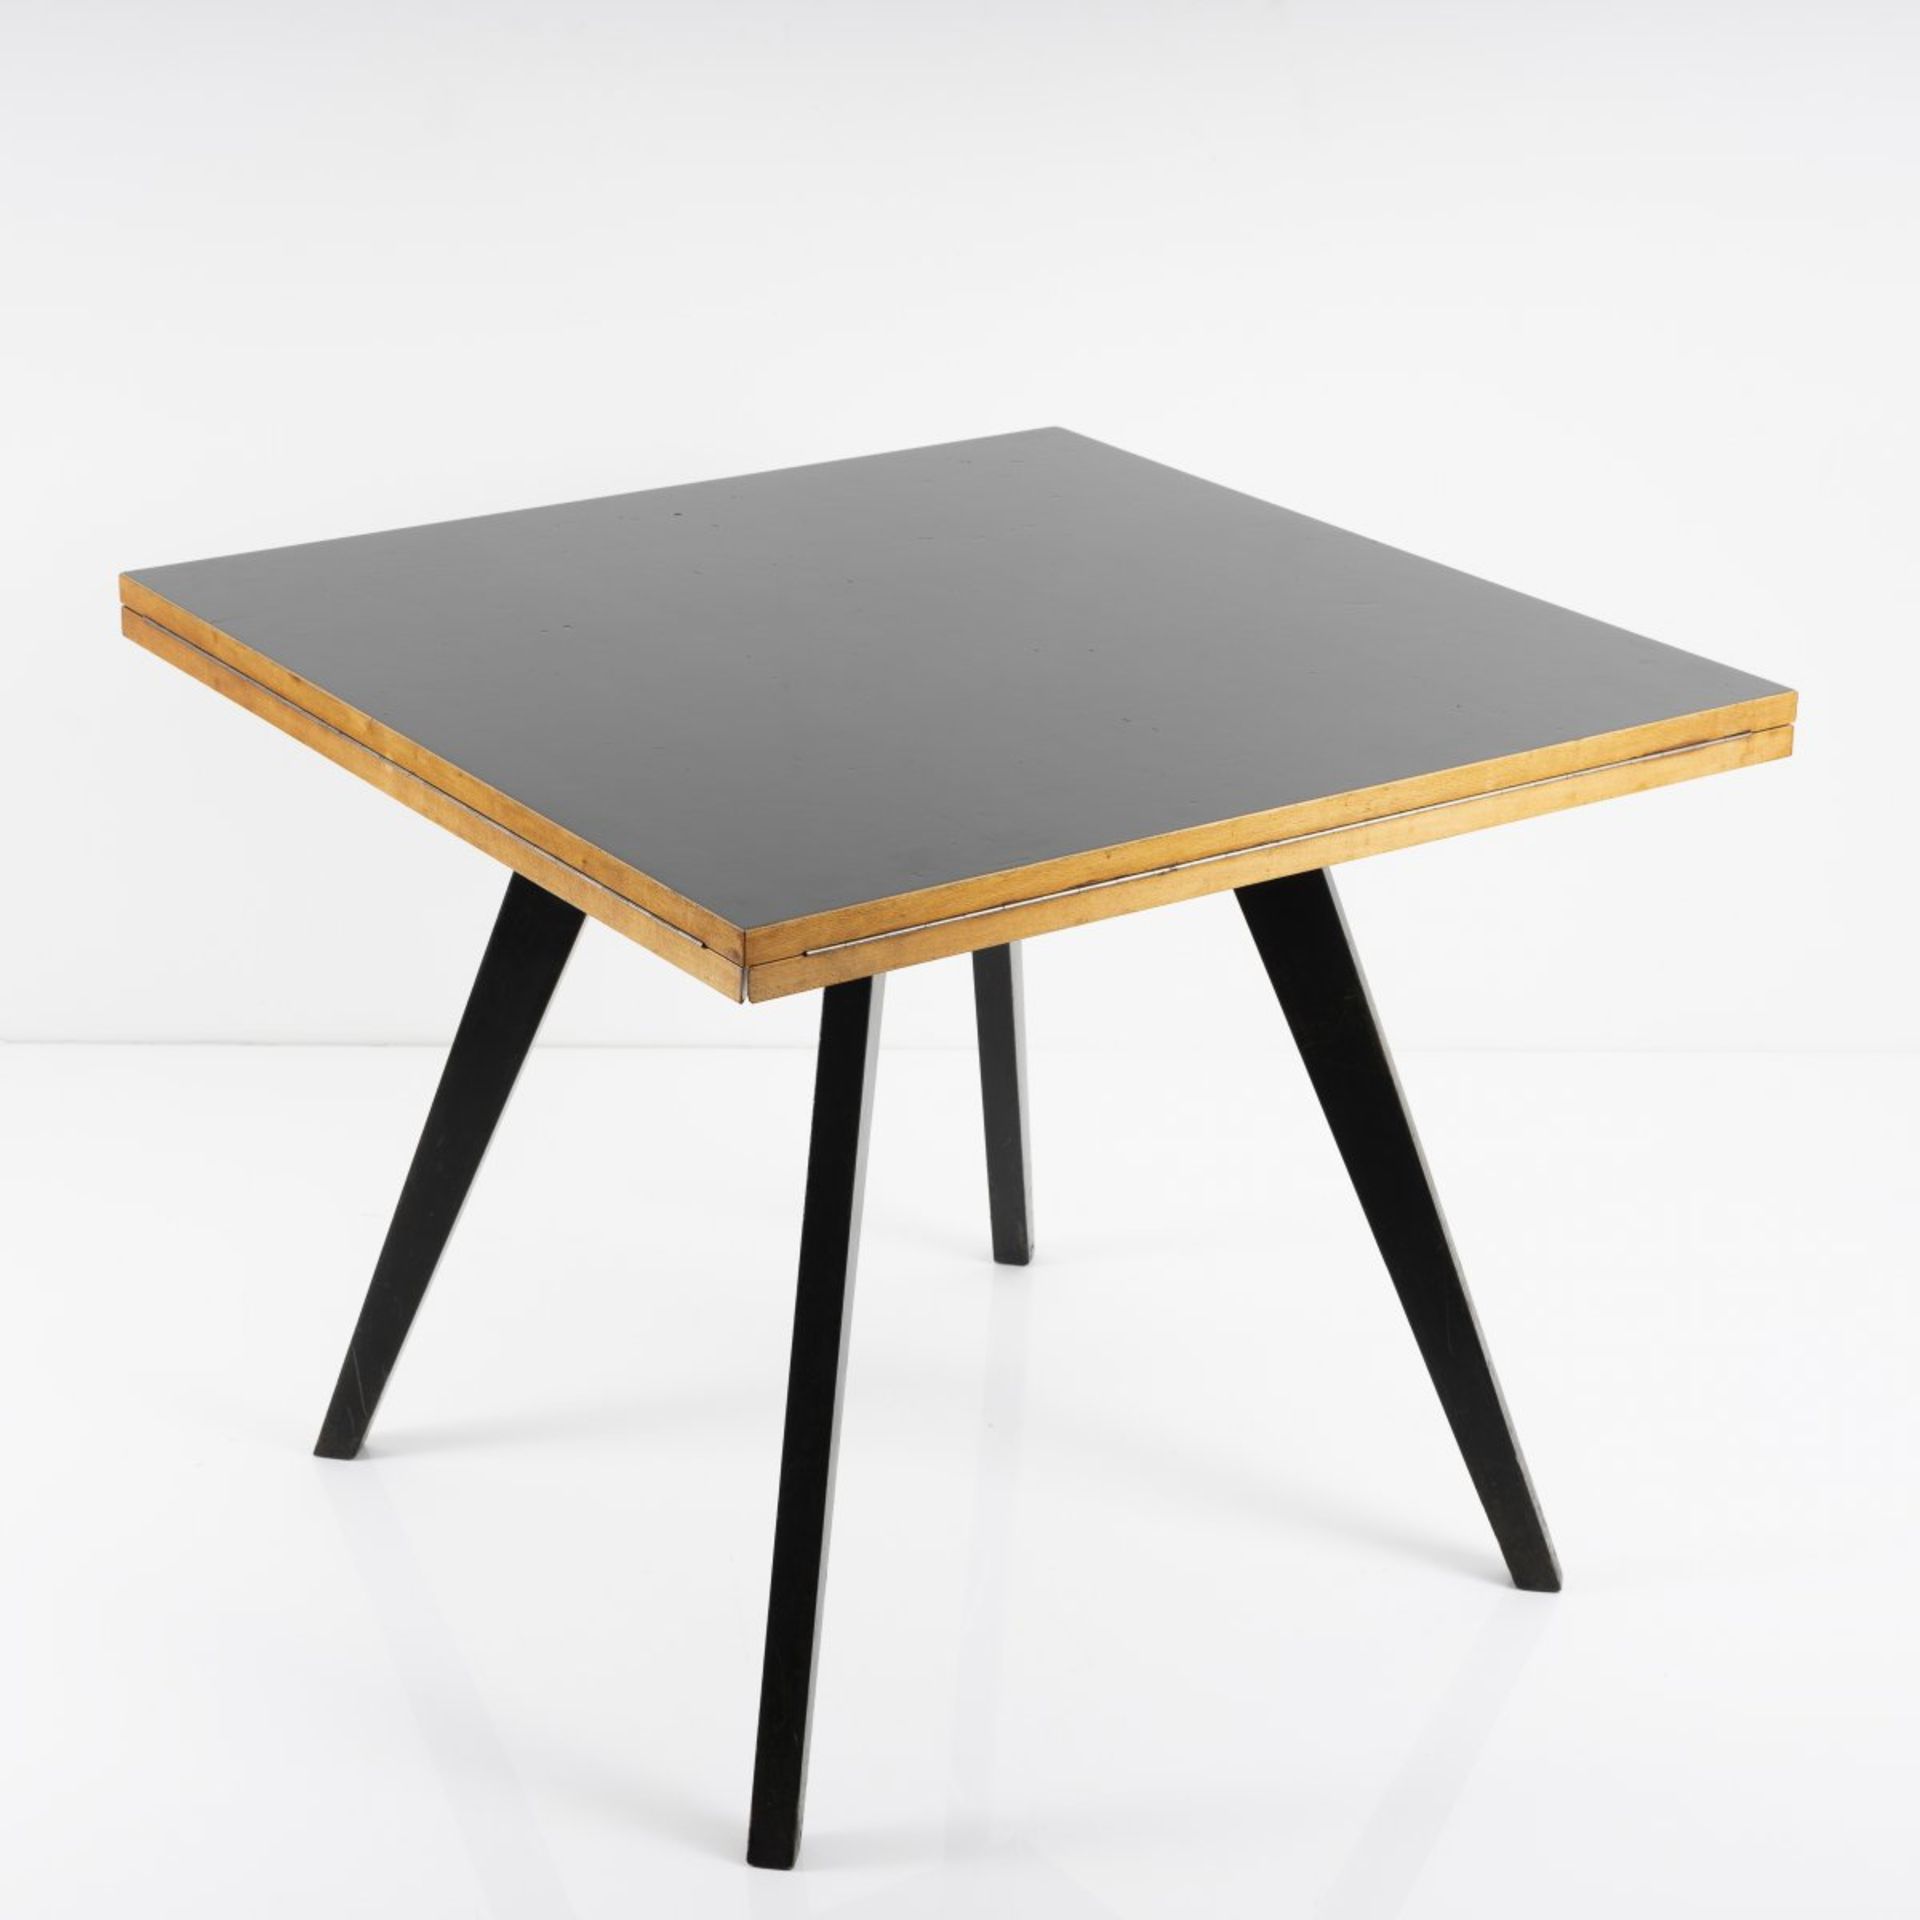 Max Bill, Tisch 'quadratrund', 1949Tisch 'quadratrund', 1949H. 73 x 90 x 90 cm bzw. Ø 127,5 cm. - Bild 4 aus 9